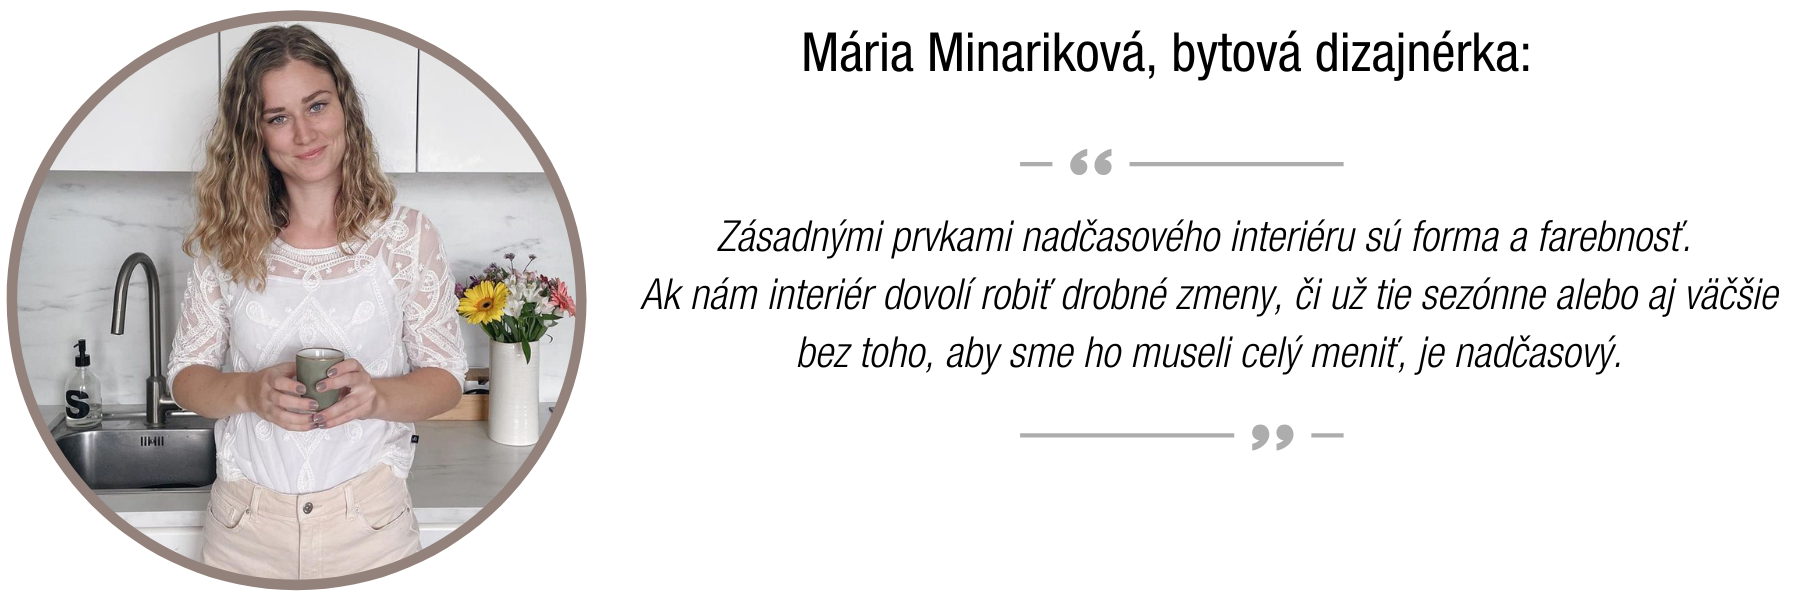 Mária Minariková interiérová dizajnérka medajlónik